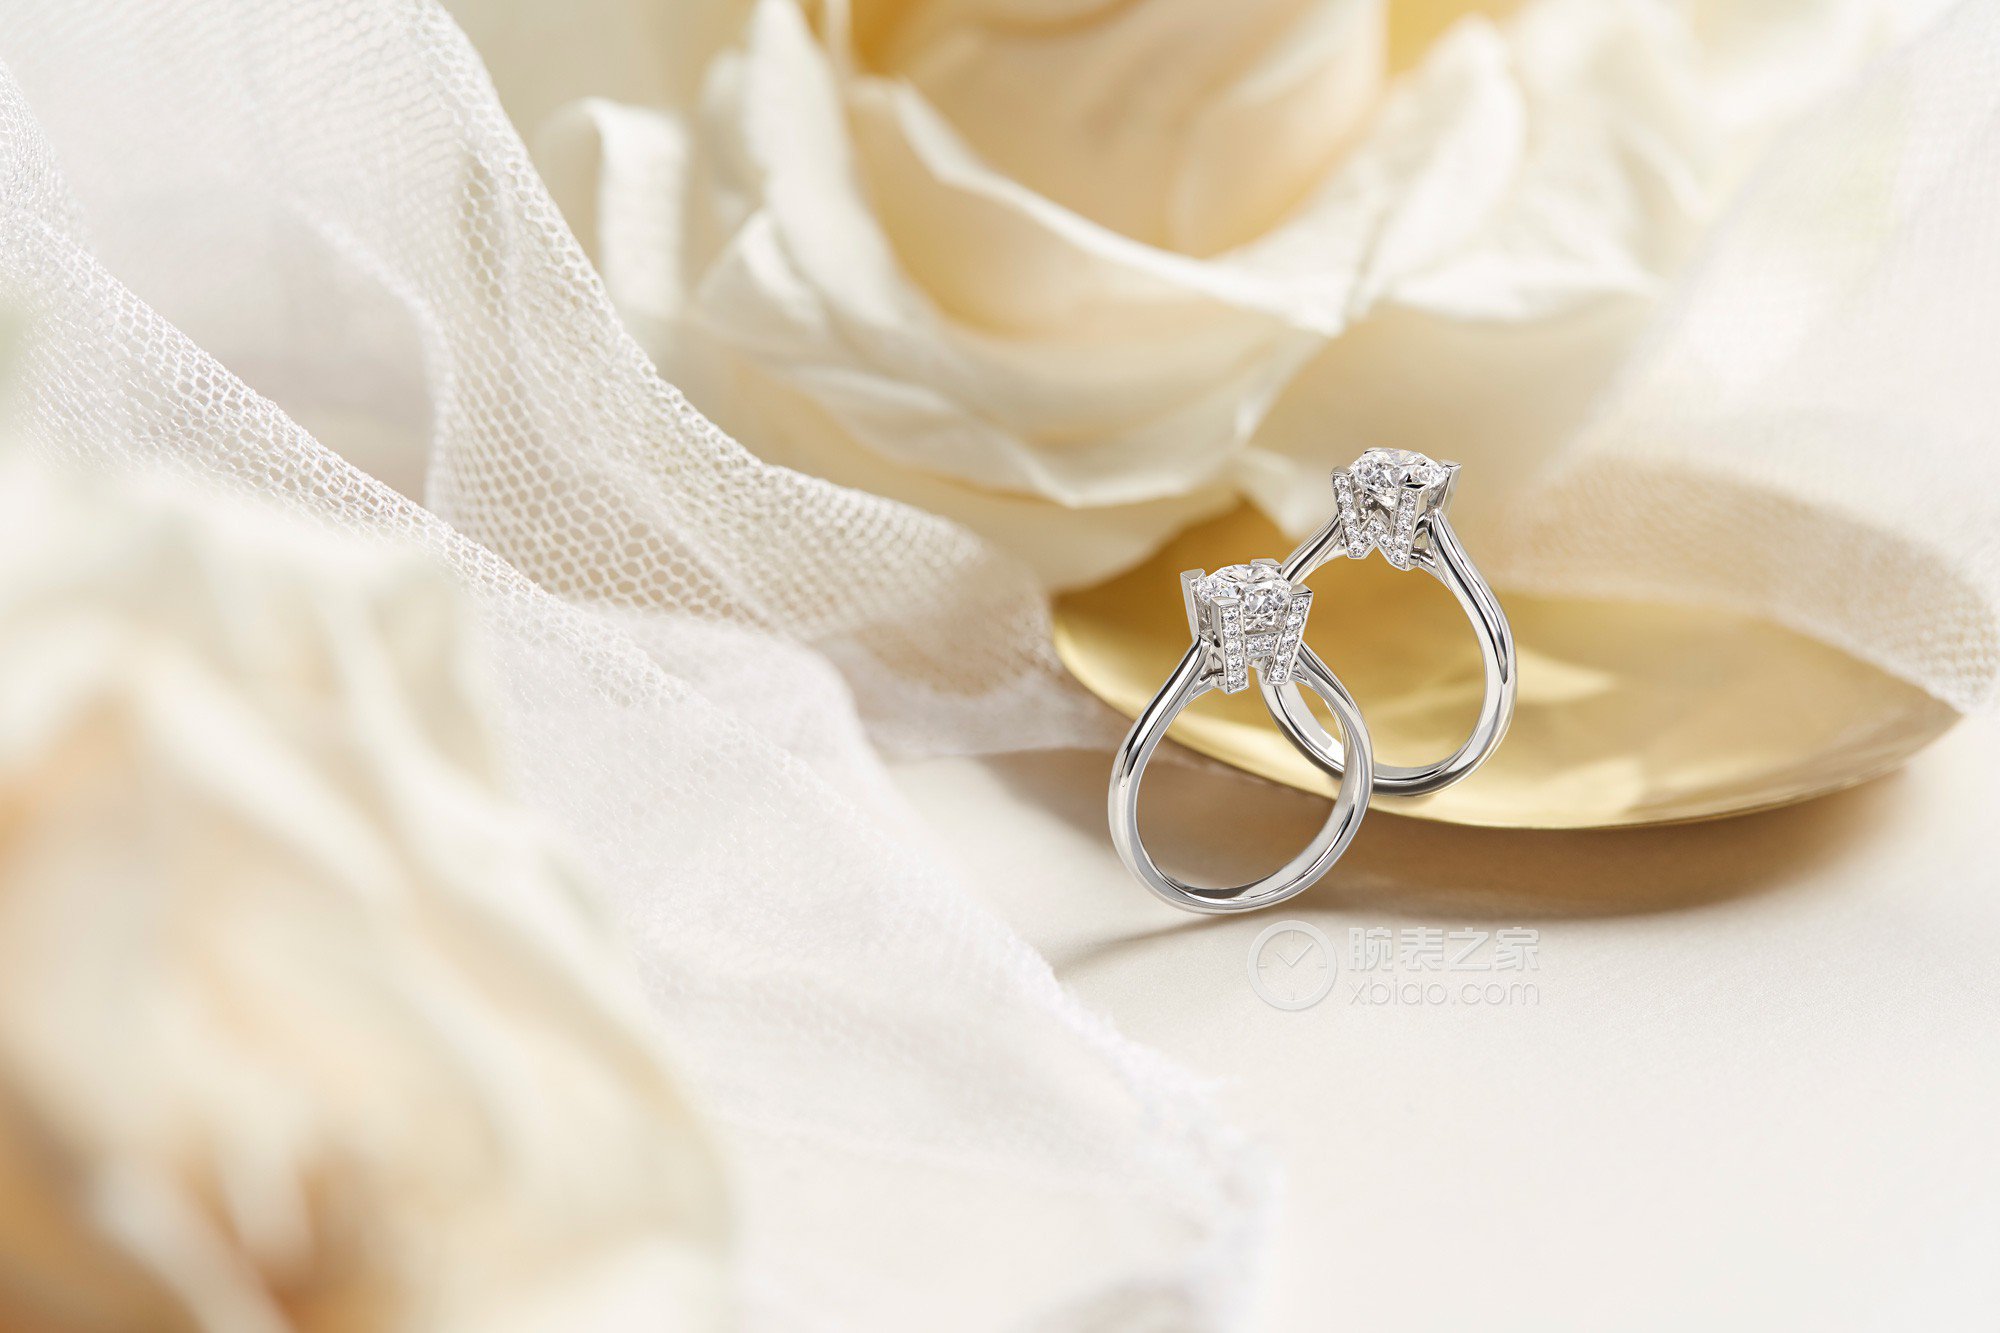 海瑞温斯顿HW Logo珠宝系列极细微密钉镶嵌订婚钻戒戒指